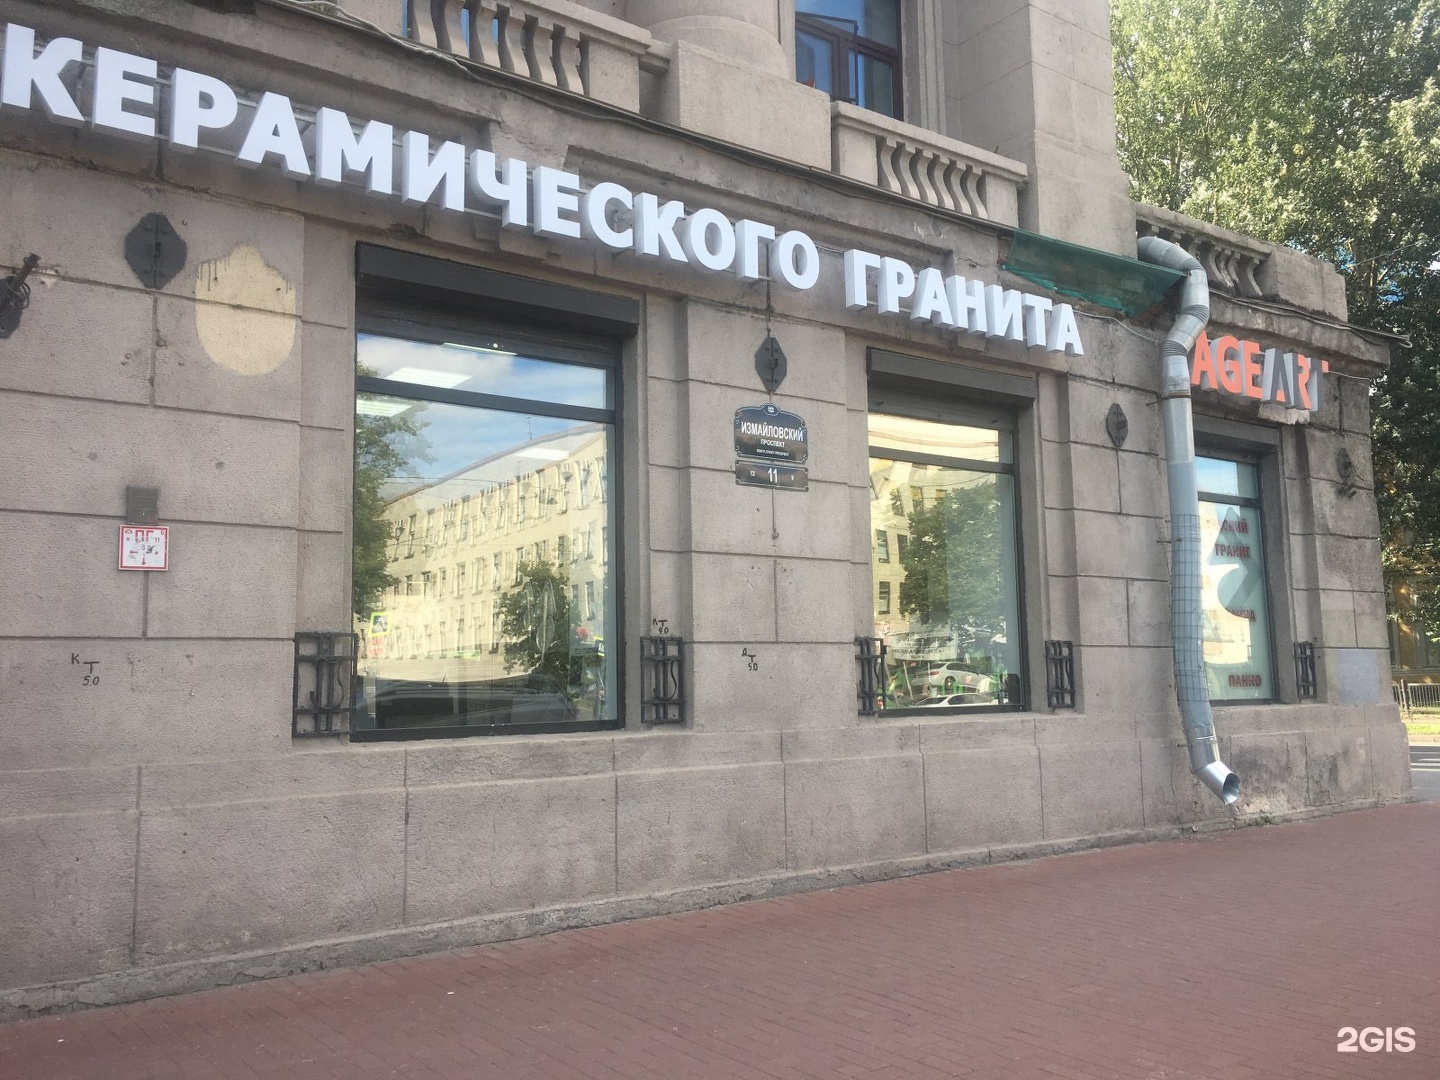 Кдц керамический. Проспект героев 30 Санкт-Петербург.